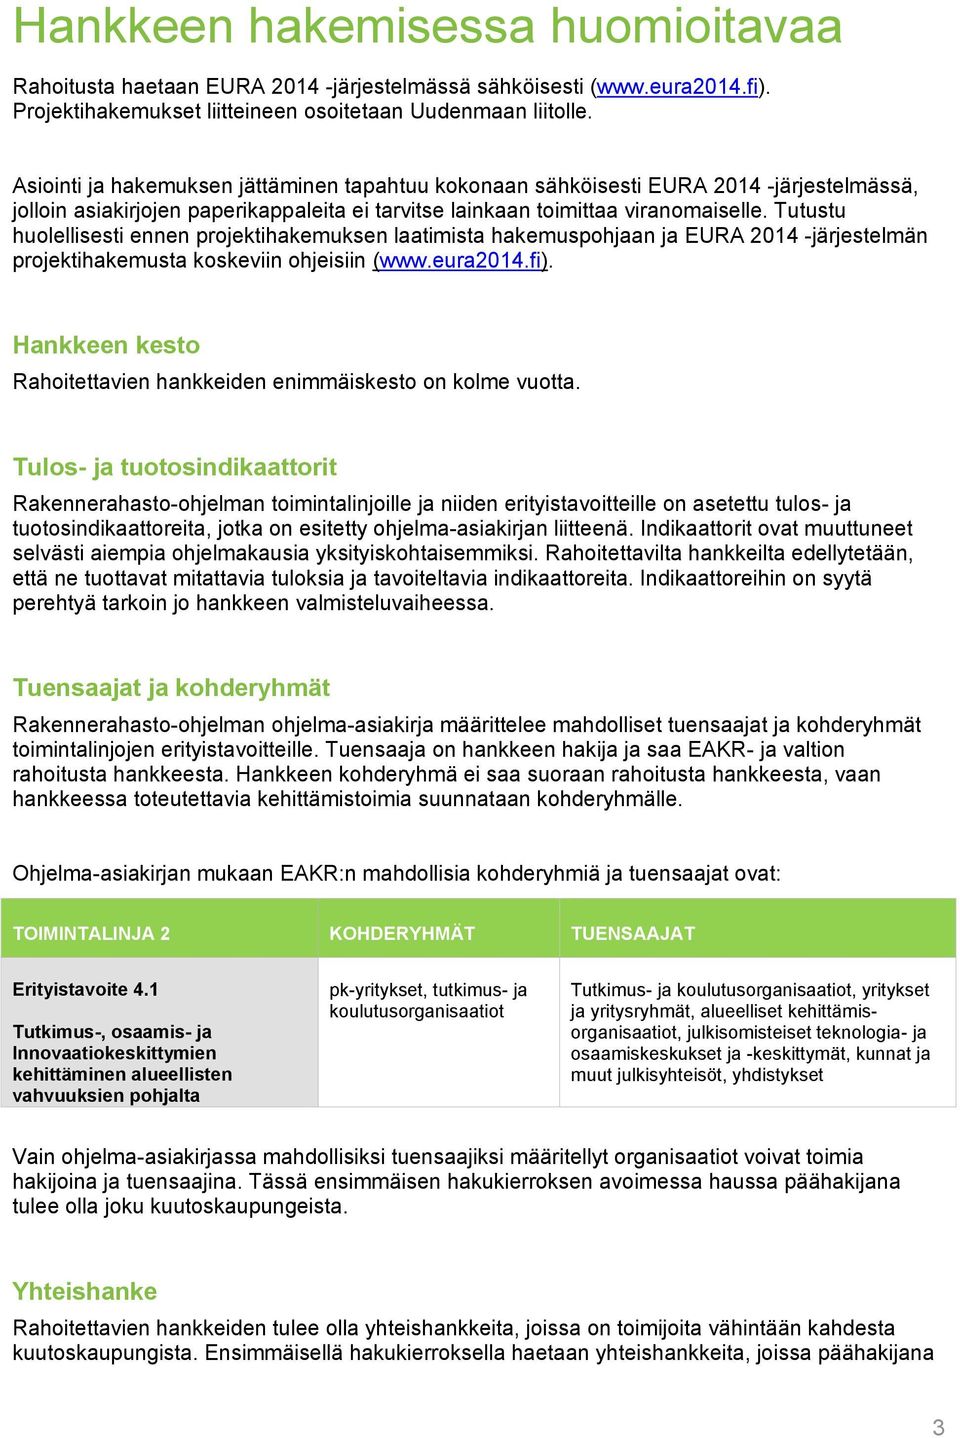 Tutustu huolellisesti ennen projektihakemuksen laatimista hakemuspohjaan ja EURA 2014 -järjestelmän projektihakemusta koskeviin ohjeisiin (www.eura2014.fi).